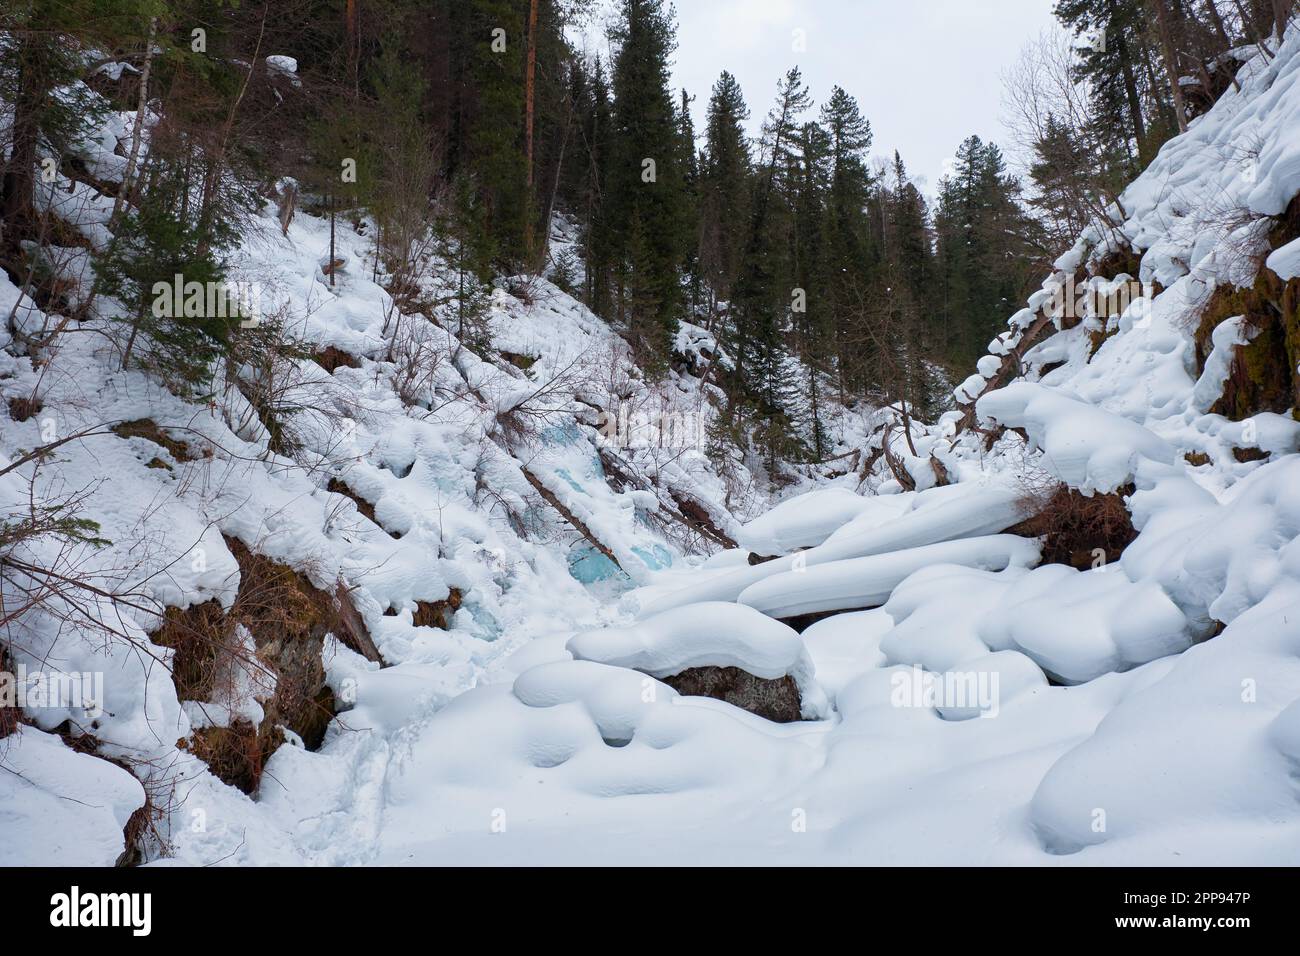 Sentier en forêt de taïga d'hiver sous de fortes neiges le long de la rivière Tevenek (troisième rivière) sur la rive du lac Teletskoe. Artybash, Altaï, Sibérie, Russie Banque D'Images